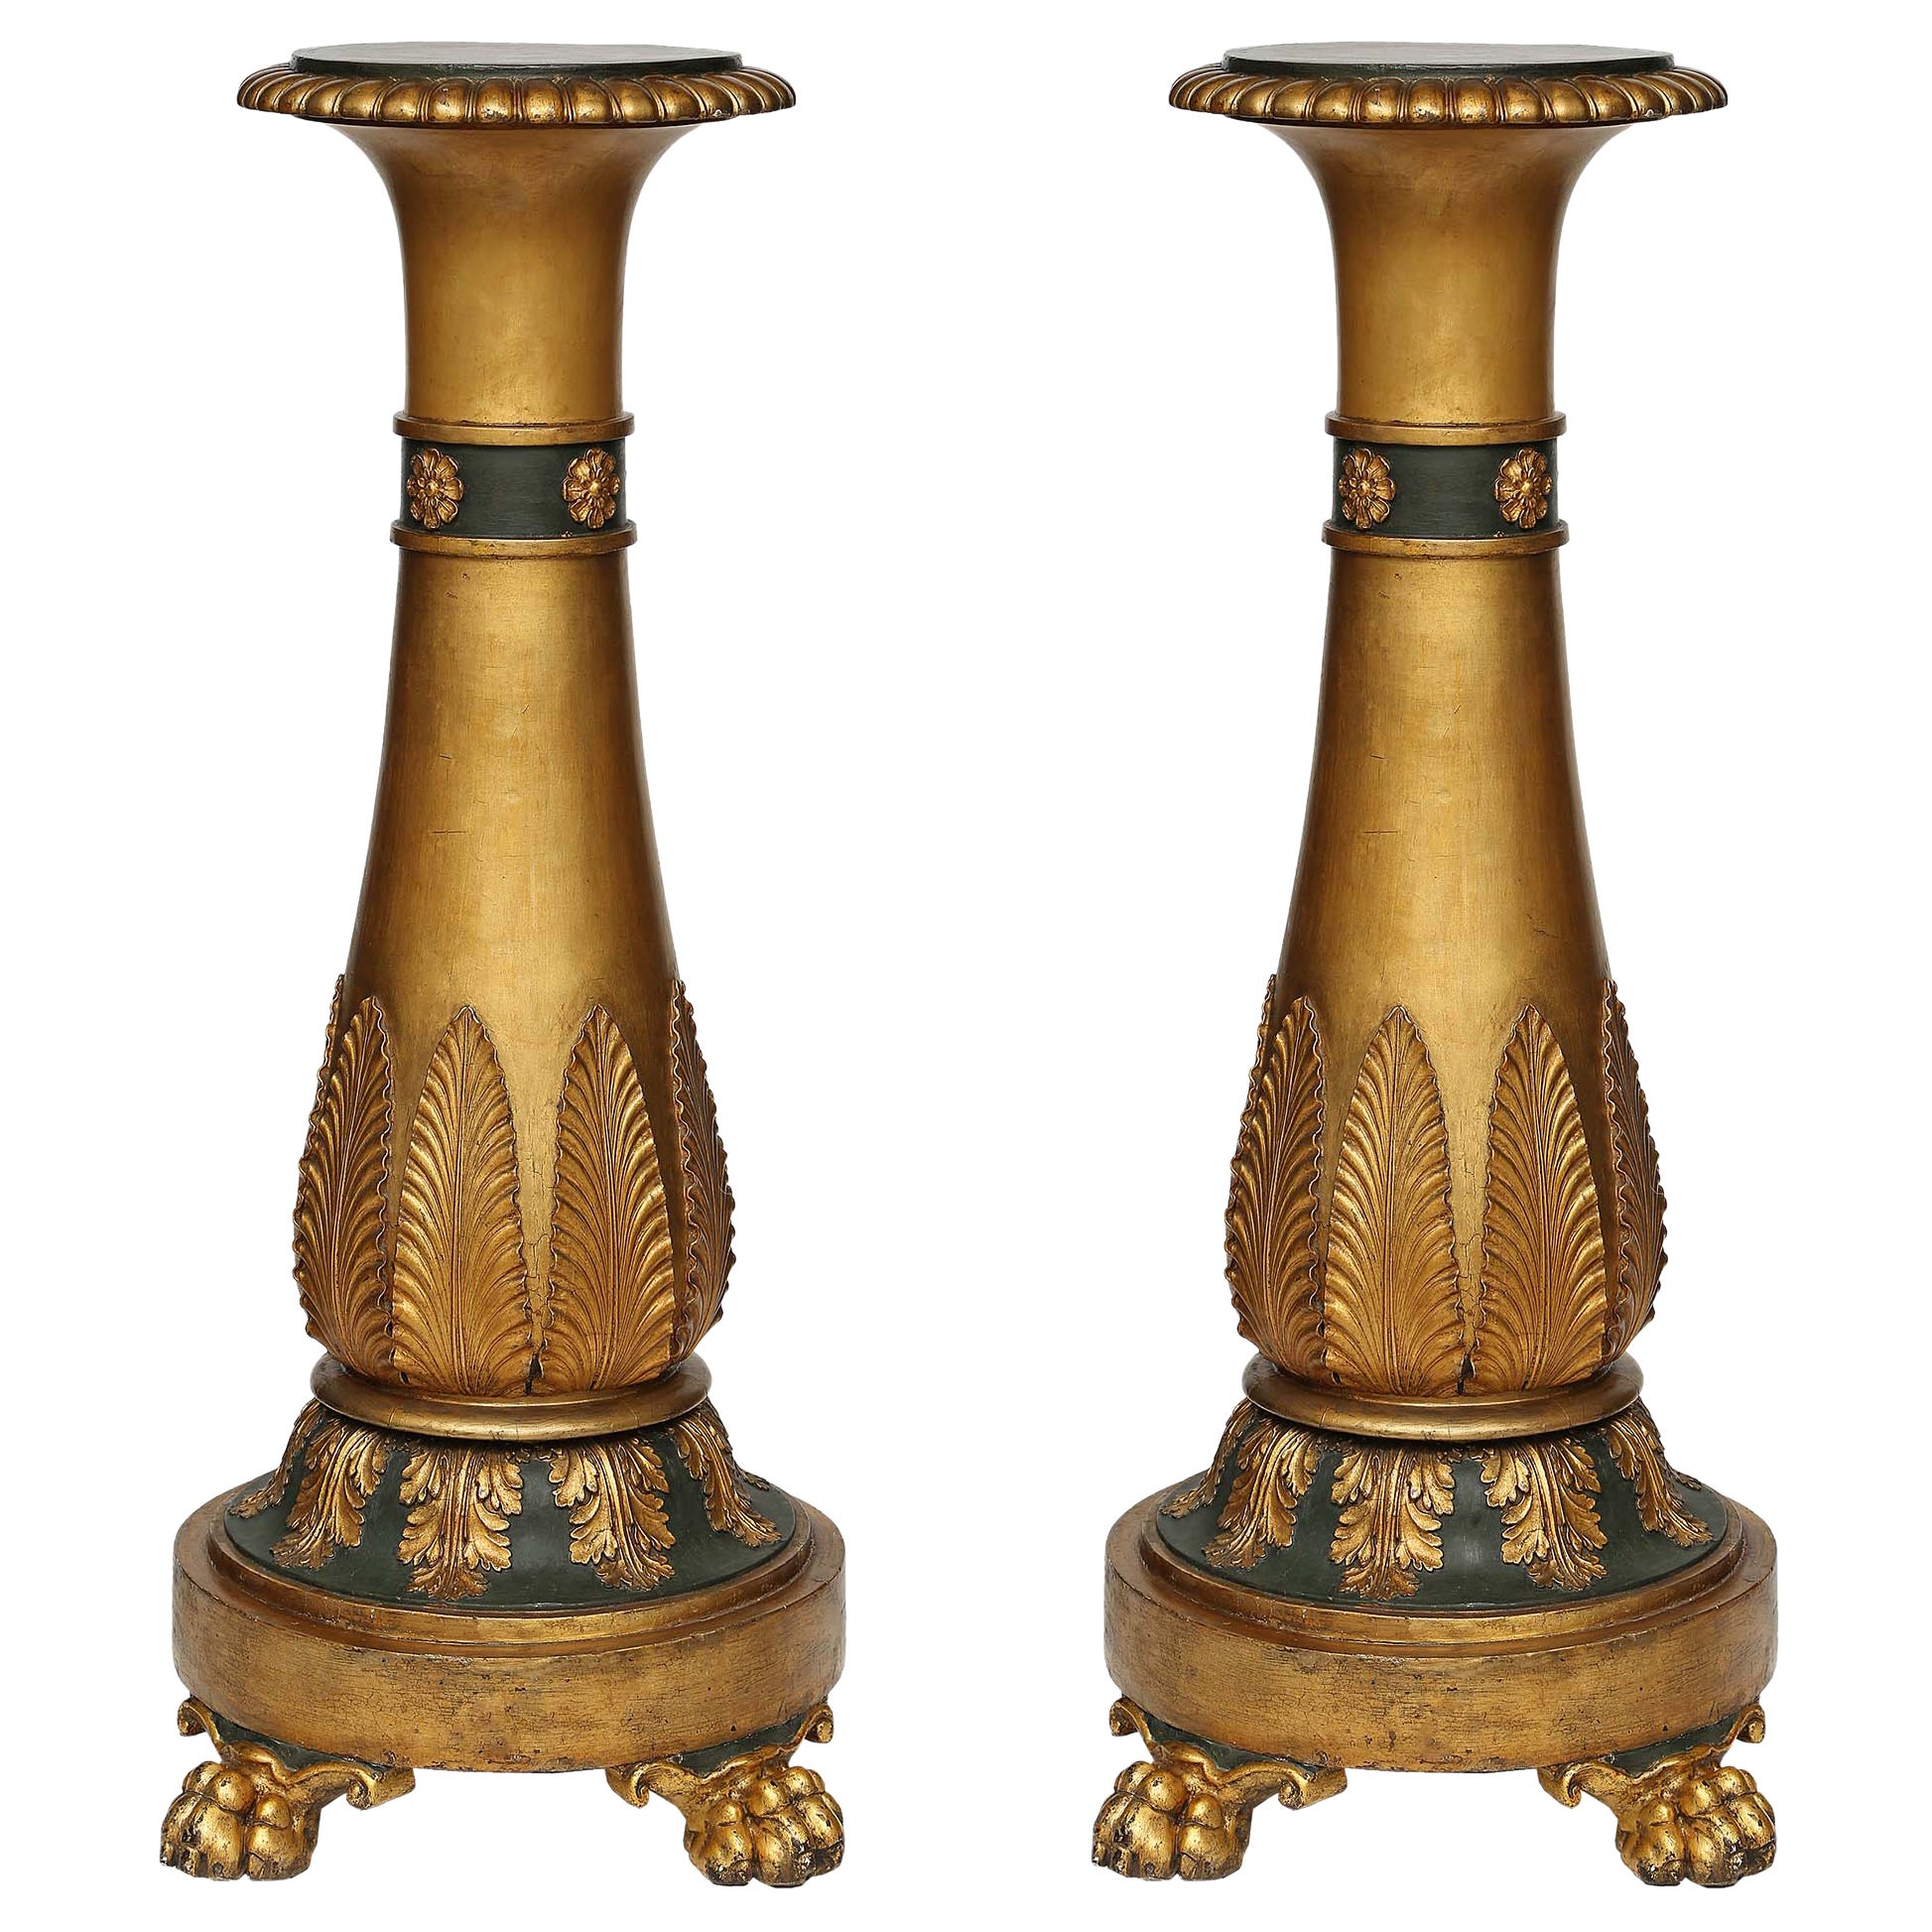 Paire de piédestaux en bois doré de style néo-classique italien du 19ème siècle